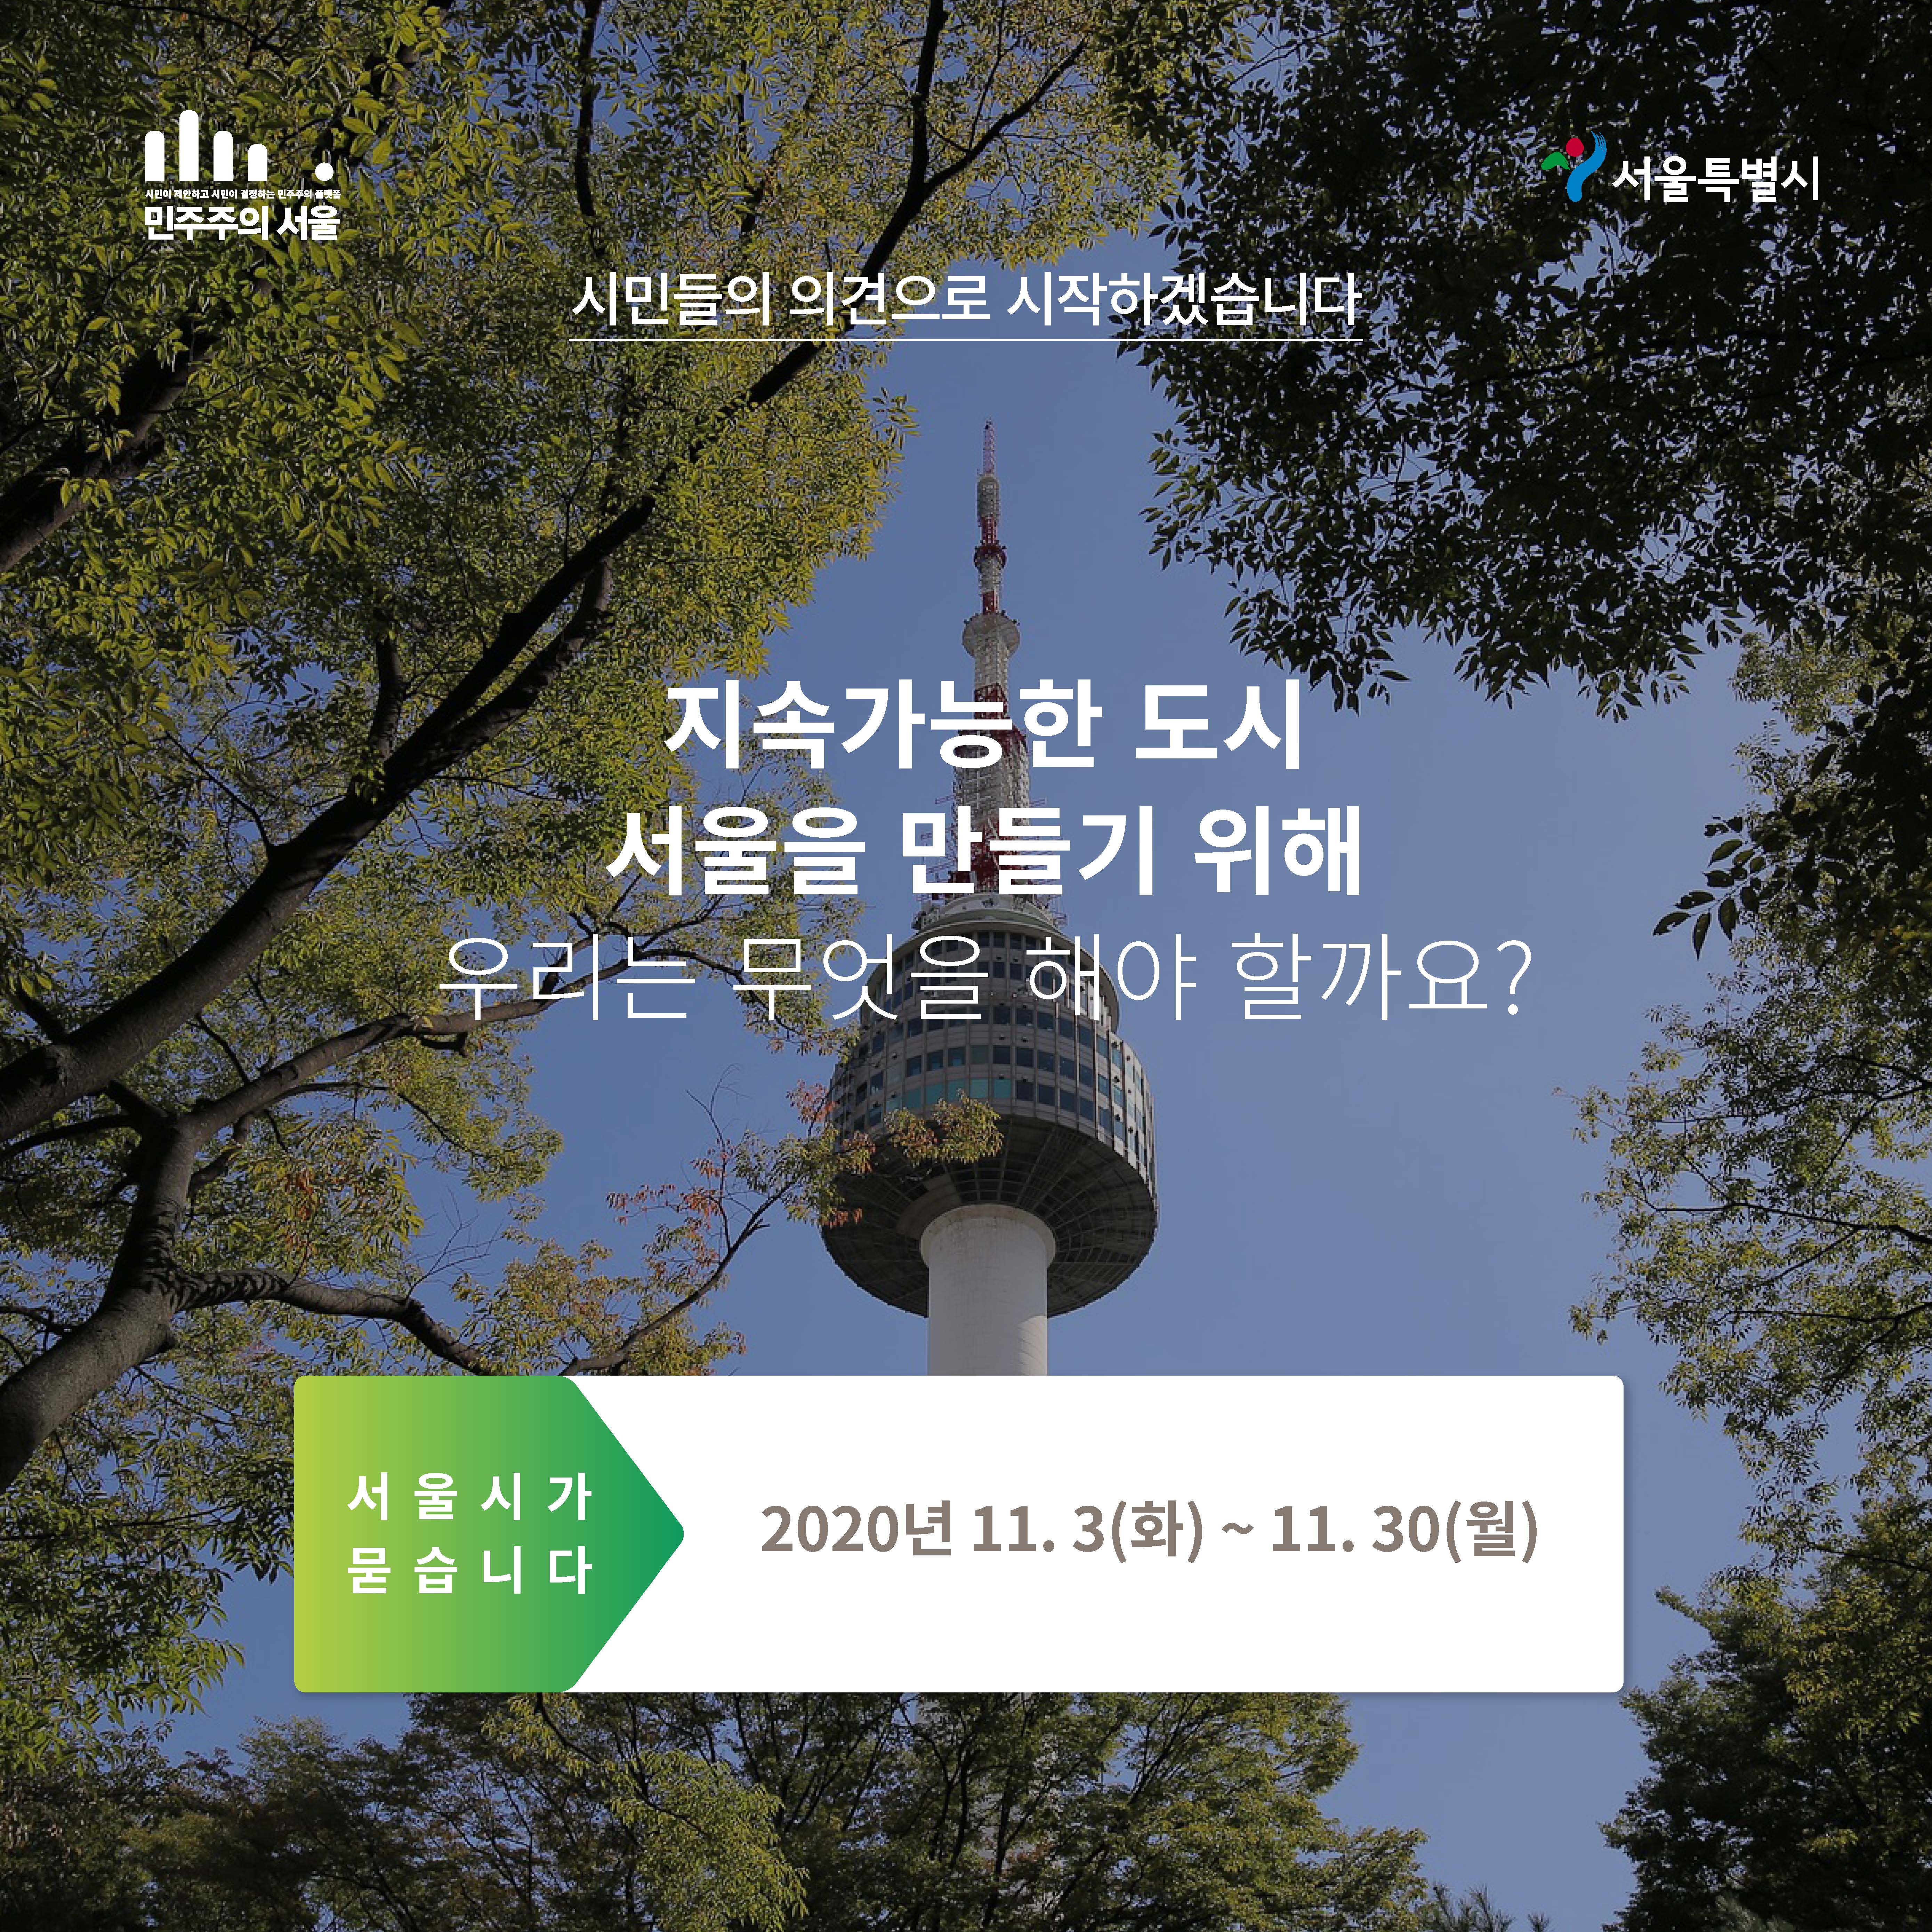 시민들의 의견으로 시작하겠습니다 지속가능한 도시 서울을 만들기 위해 우리는 무엇을 해야 할까요? 서울시가 묻습니다 2020년 11.3(화)~11.30(월)